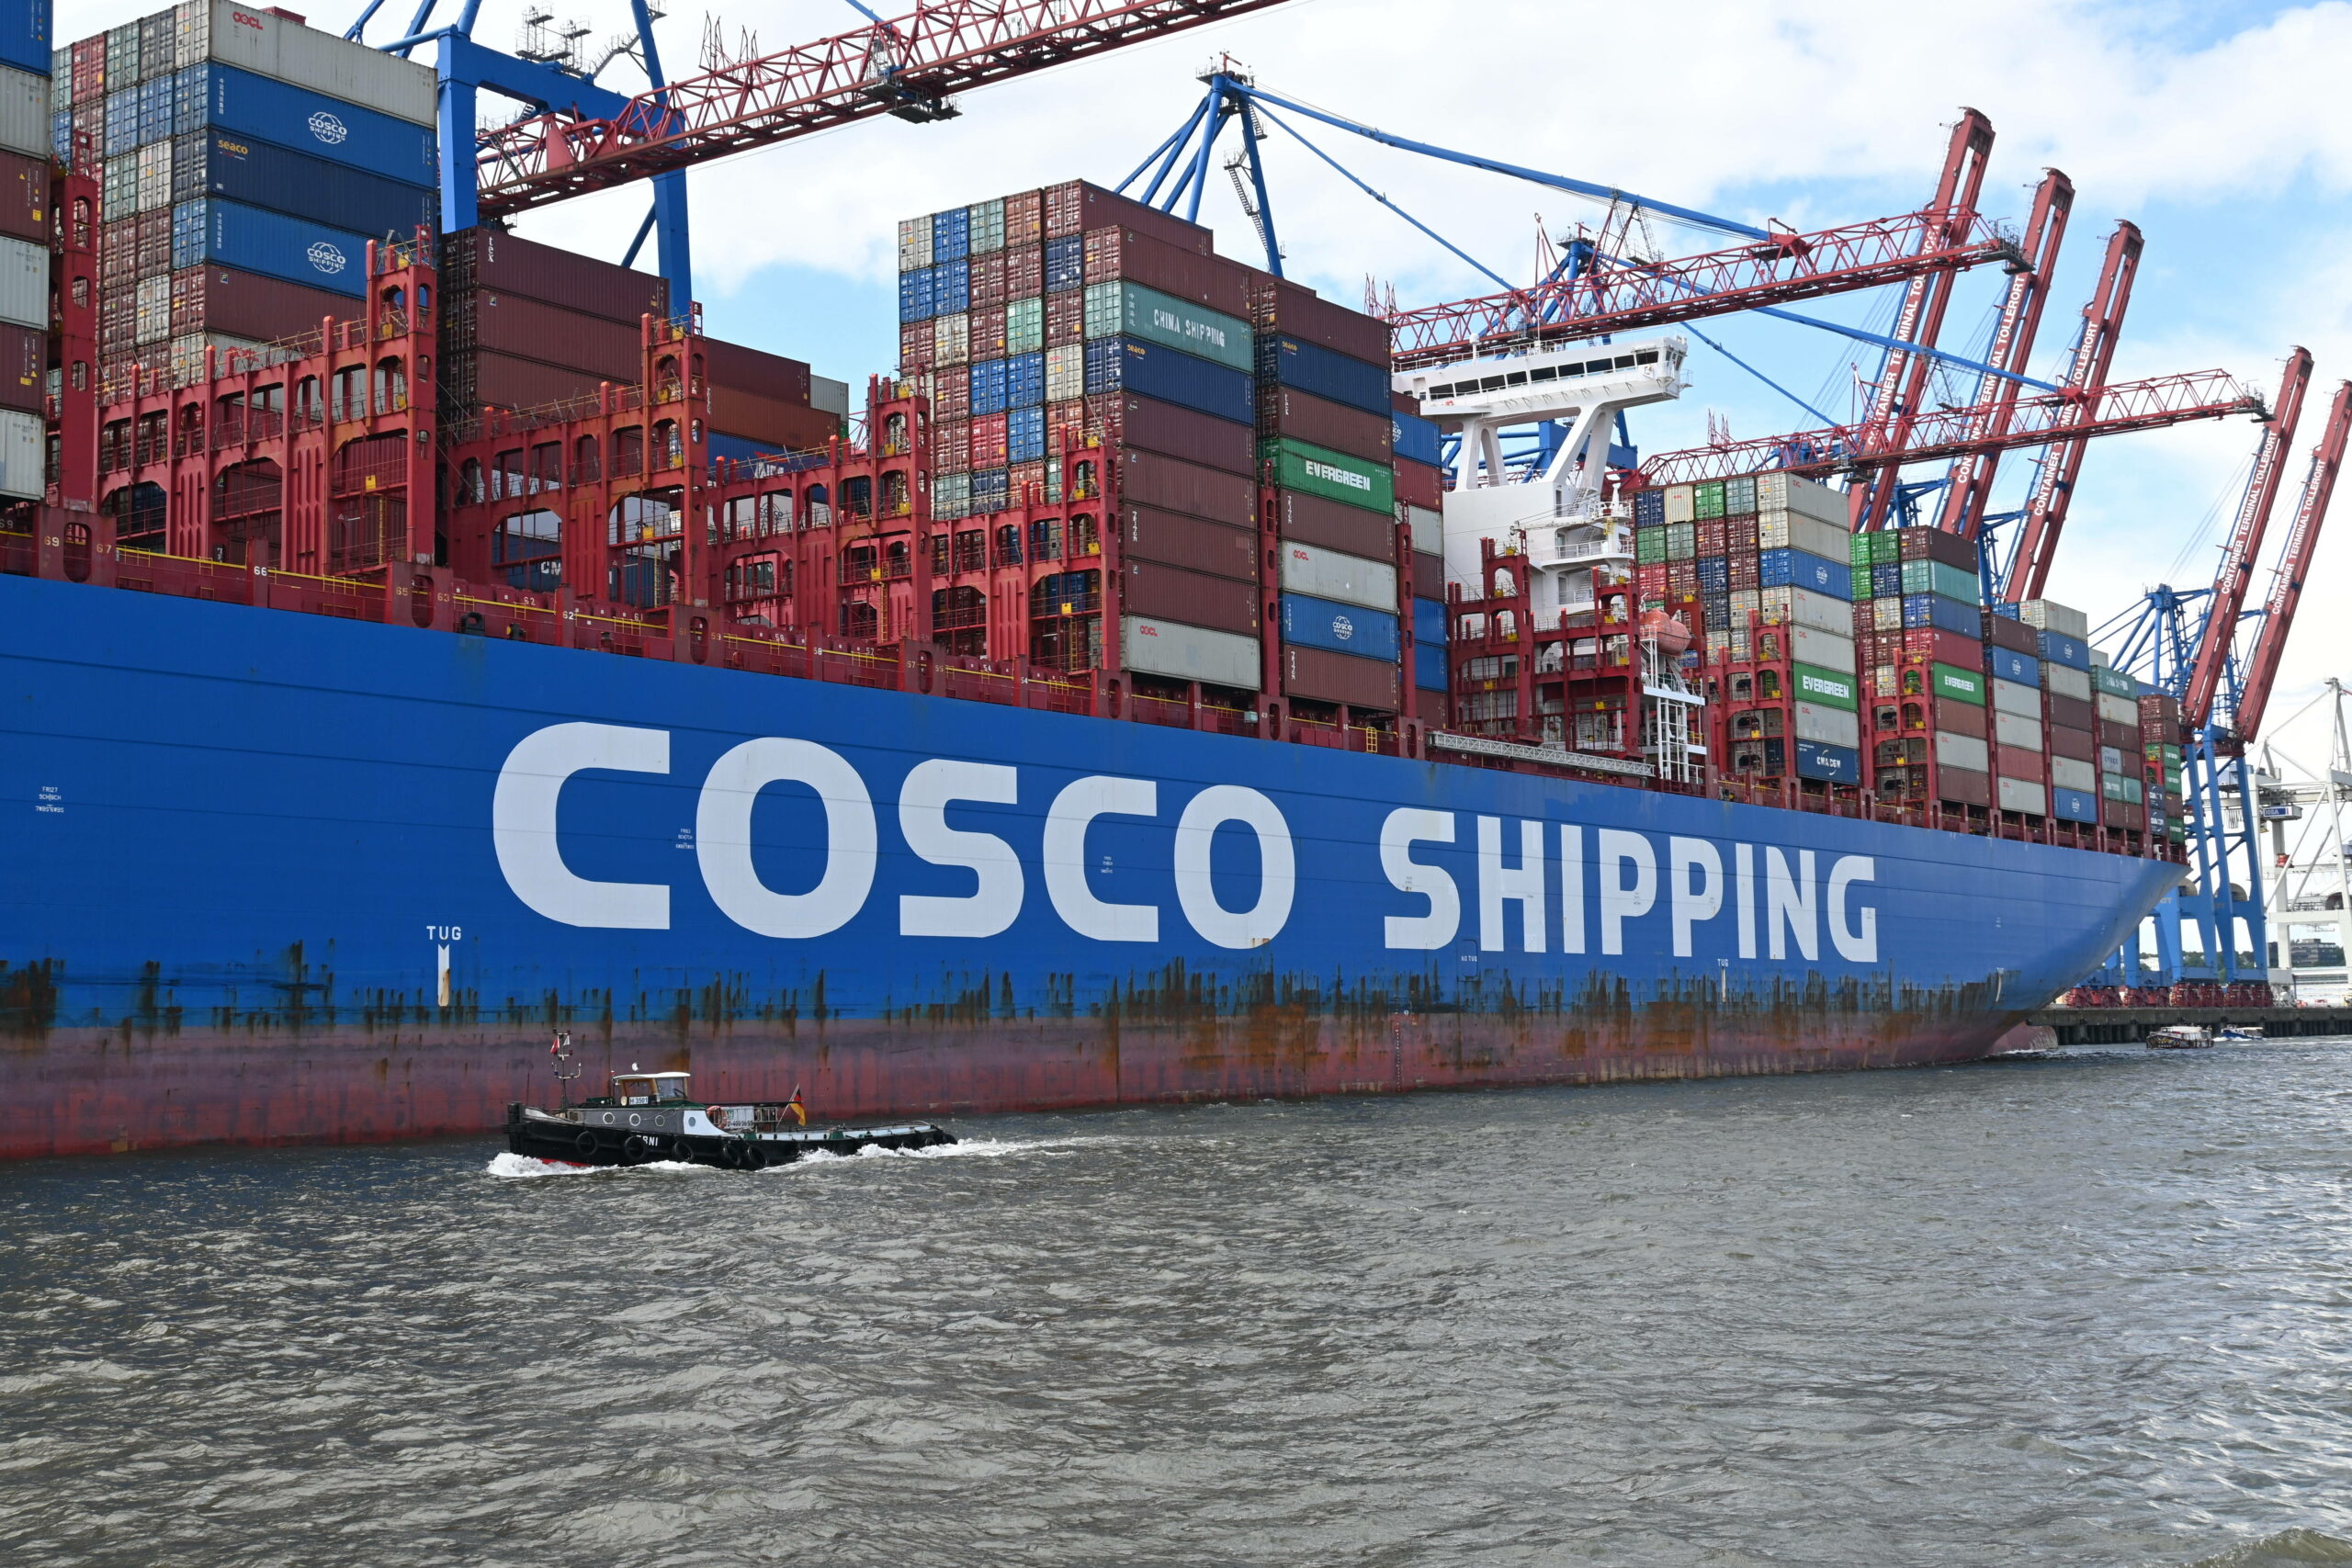 Man sieht ein blaues Containerschiff von „Cosco Shipping“ im Hamburger Hafen mit vielen Containern.